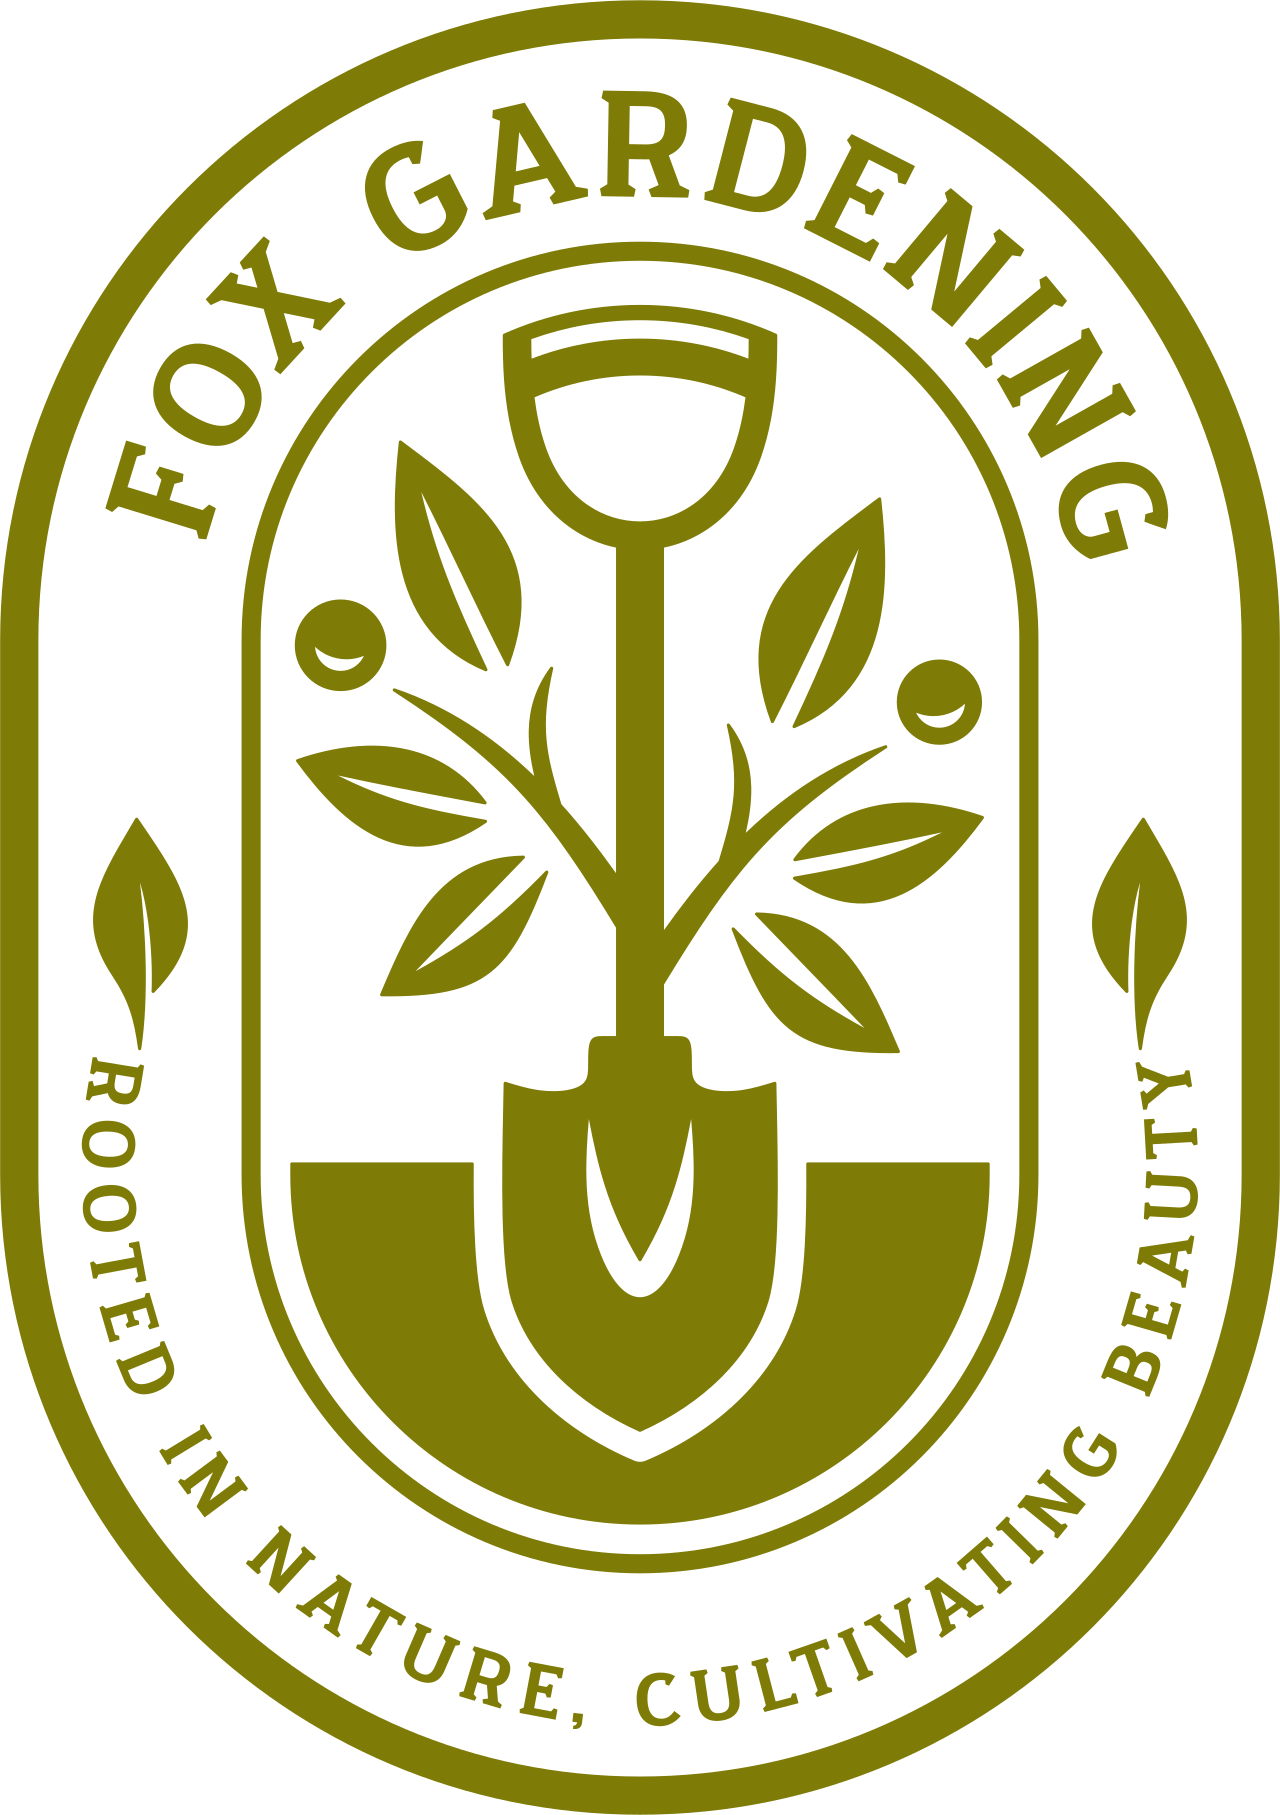 FOX GARDENING 's logo